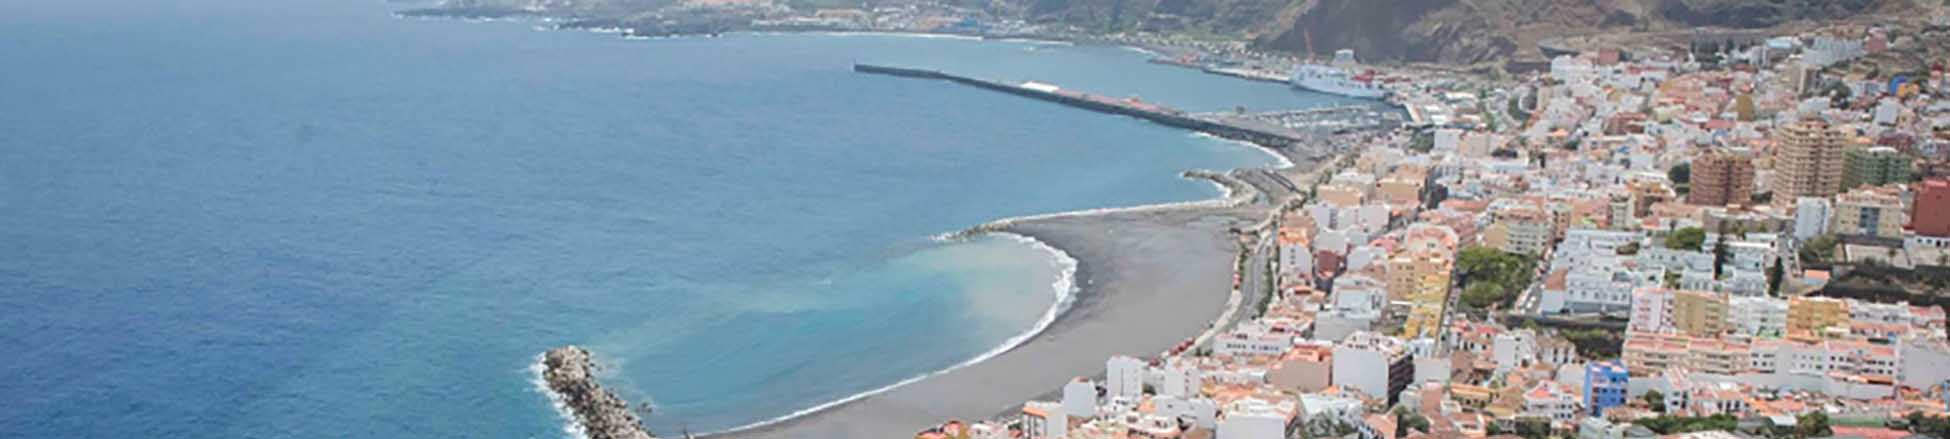 Resource image of the destination port La Palma (S.C. de la Palma) for the ferry route Tenerife (Los Cristianos) - La Palma (S.C. de la Palma)